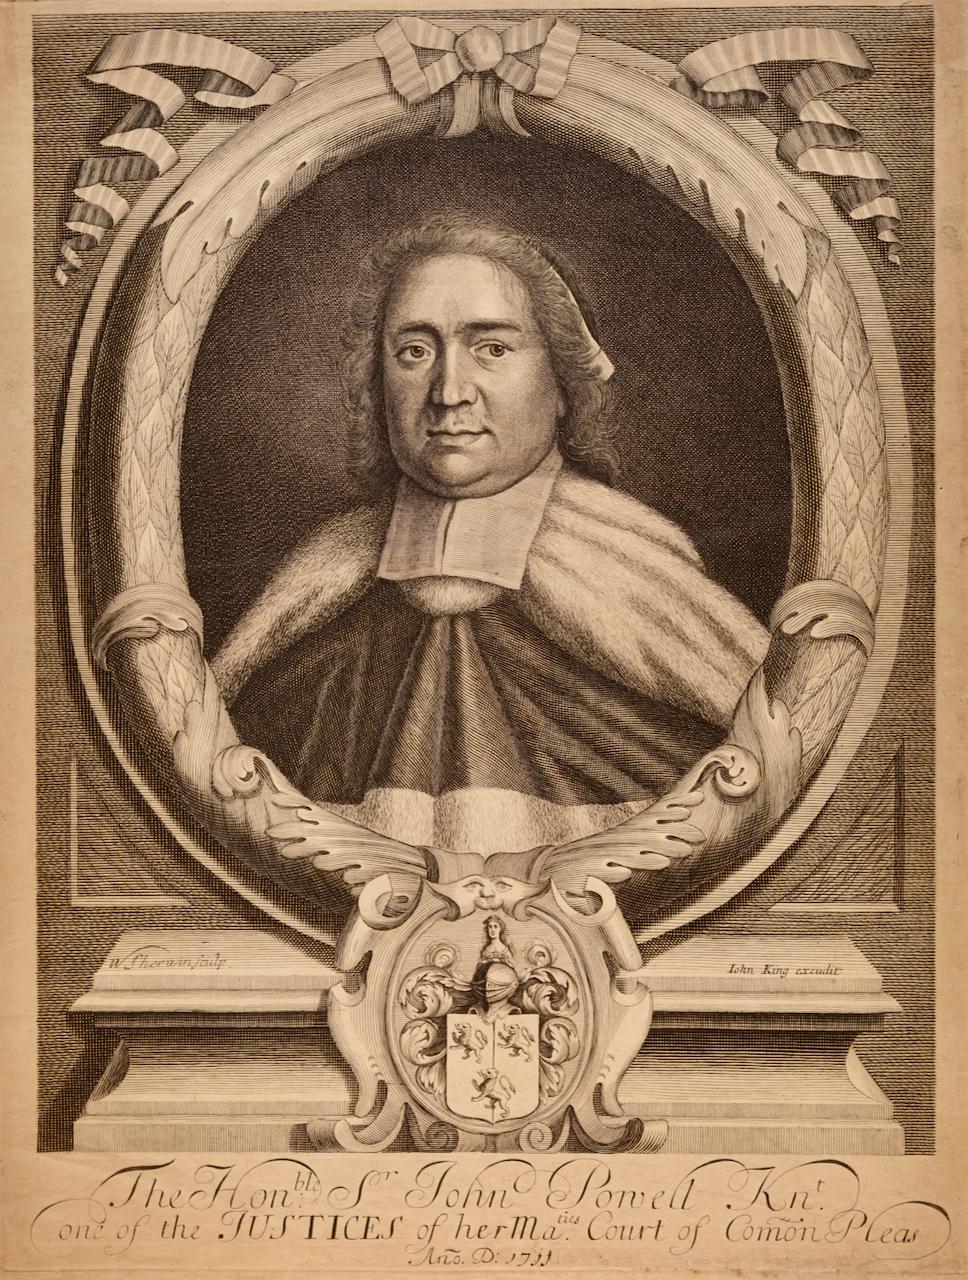 Monsieur. John Powell, chevalier : portrait gravé du début du 18e siècle d'après William Sherwin